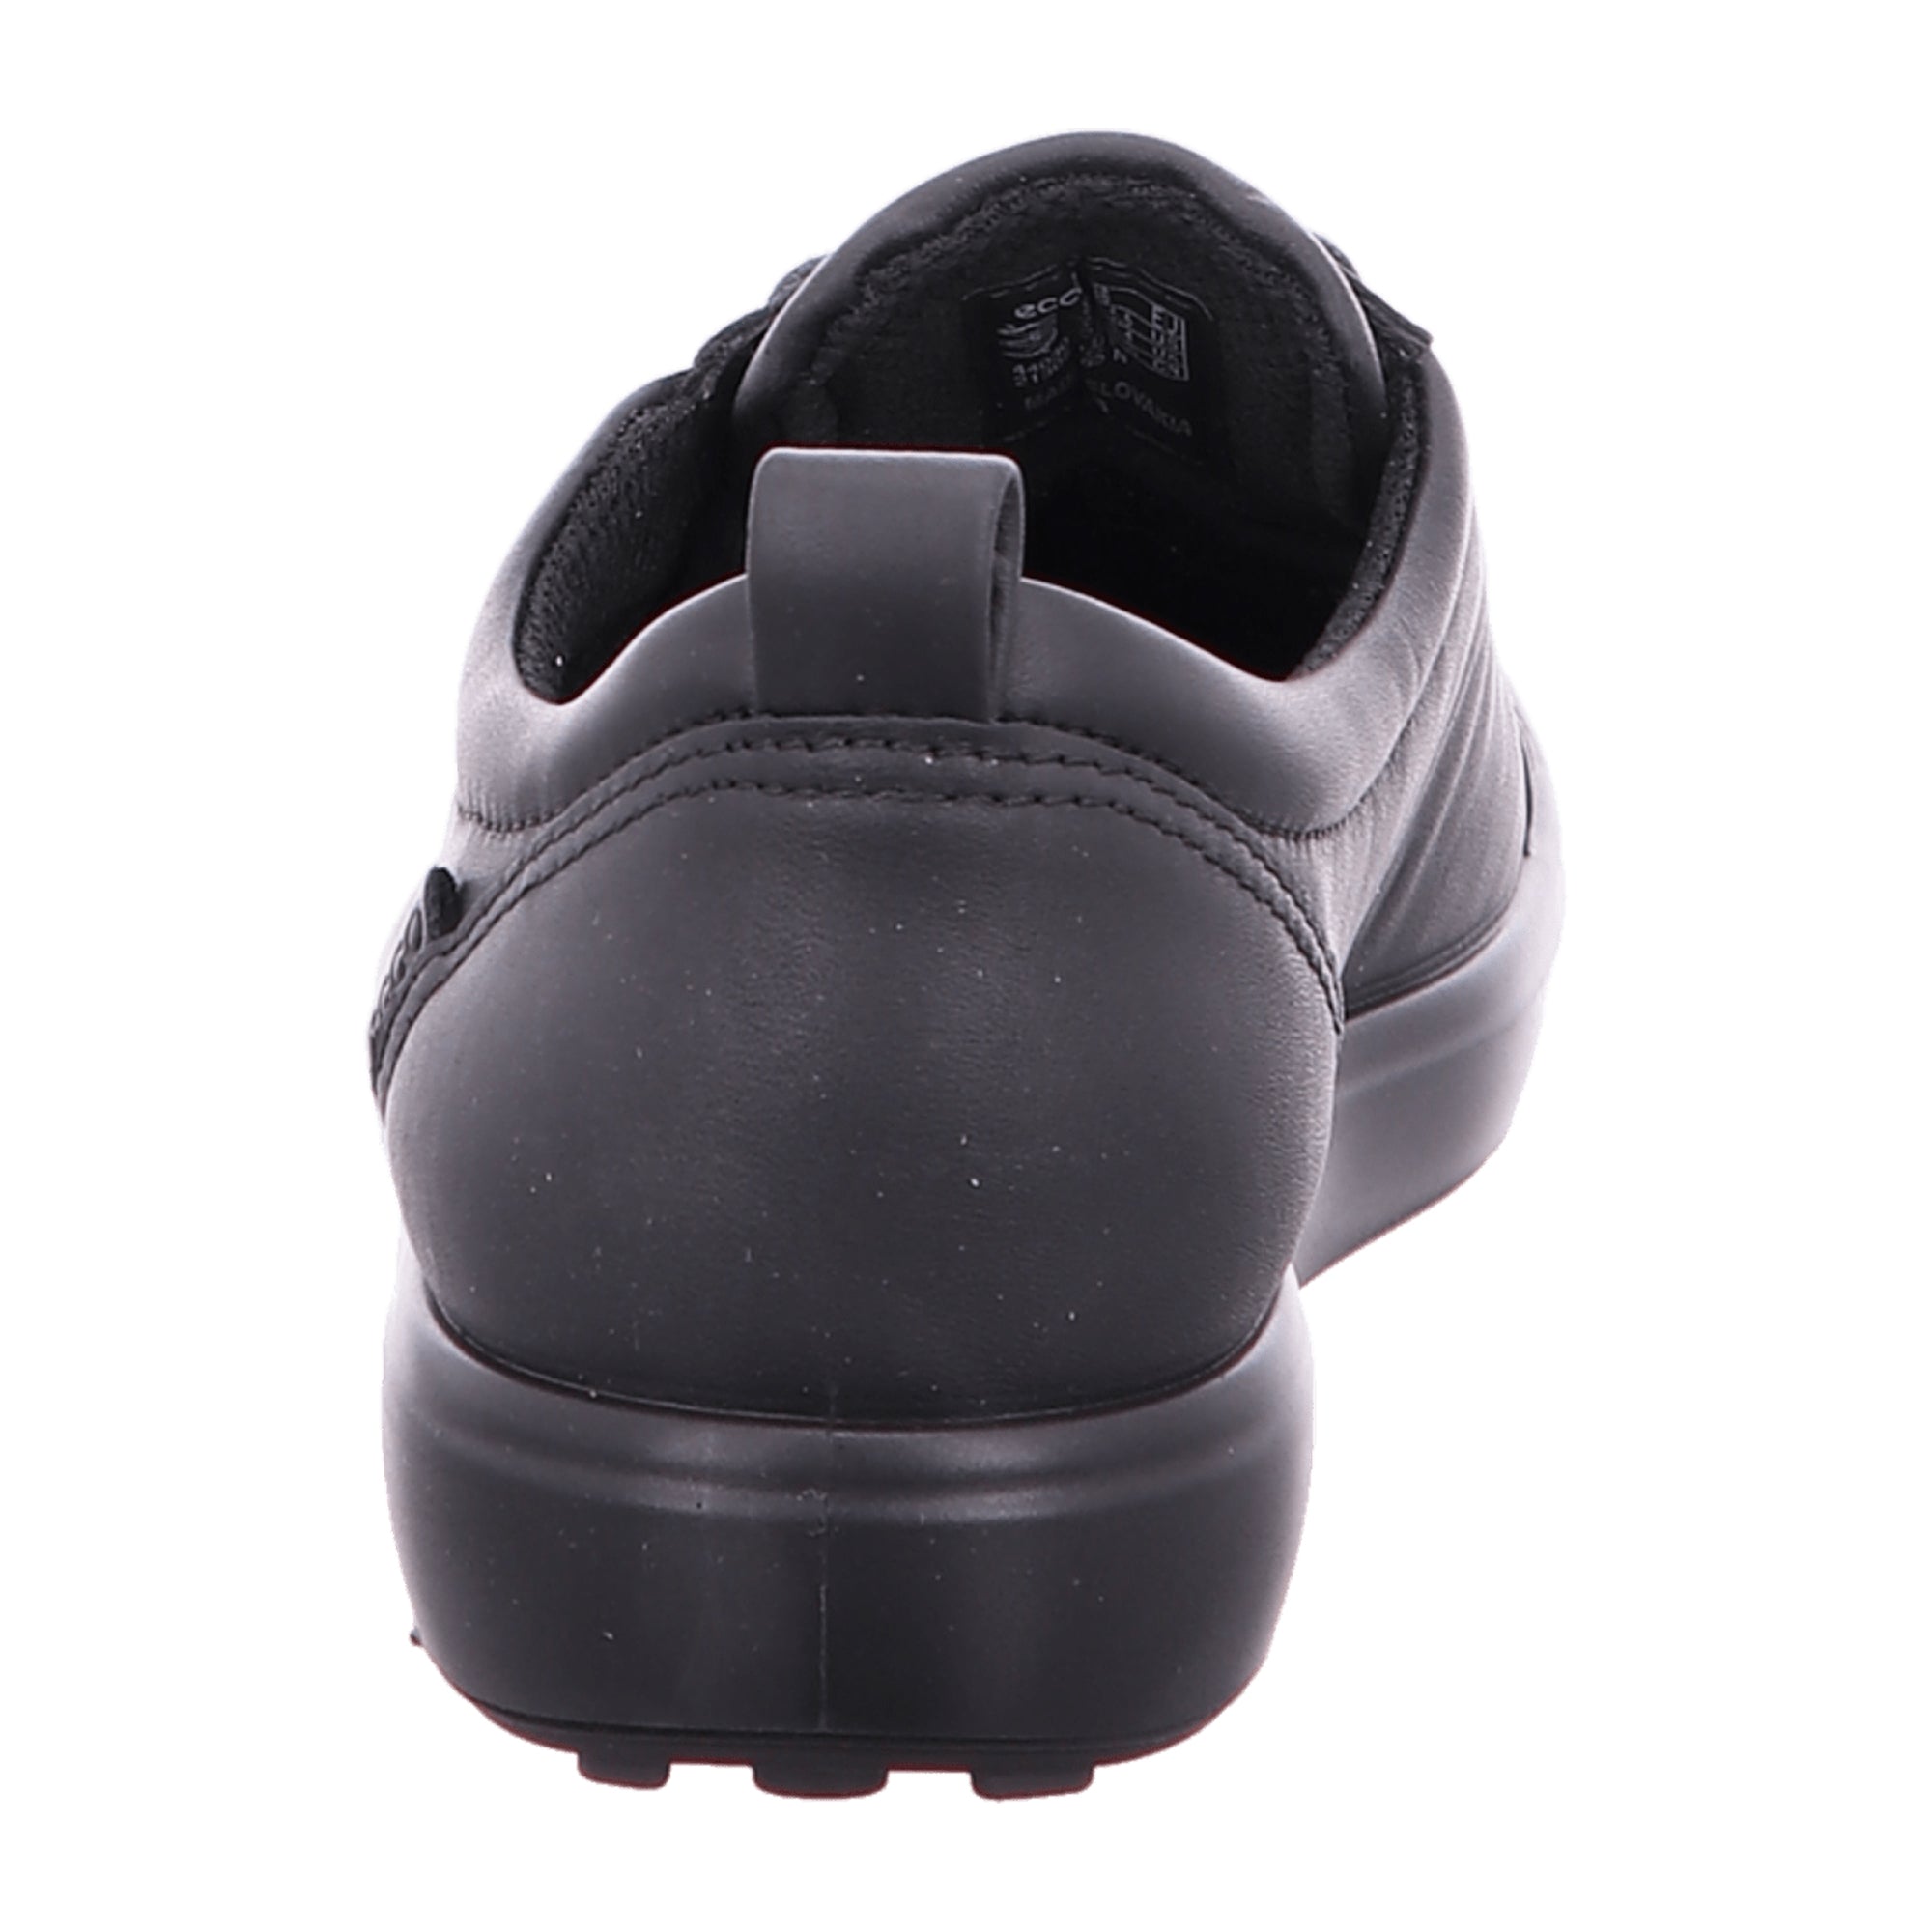 Ecco Soft 7 Women's Black Sneakers - GORE-TEX Waterproof, Breathable Footwear